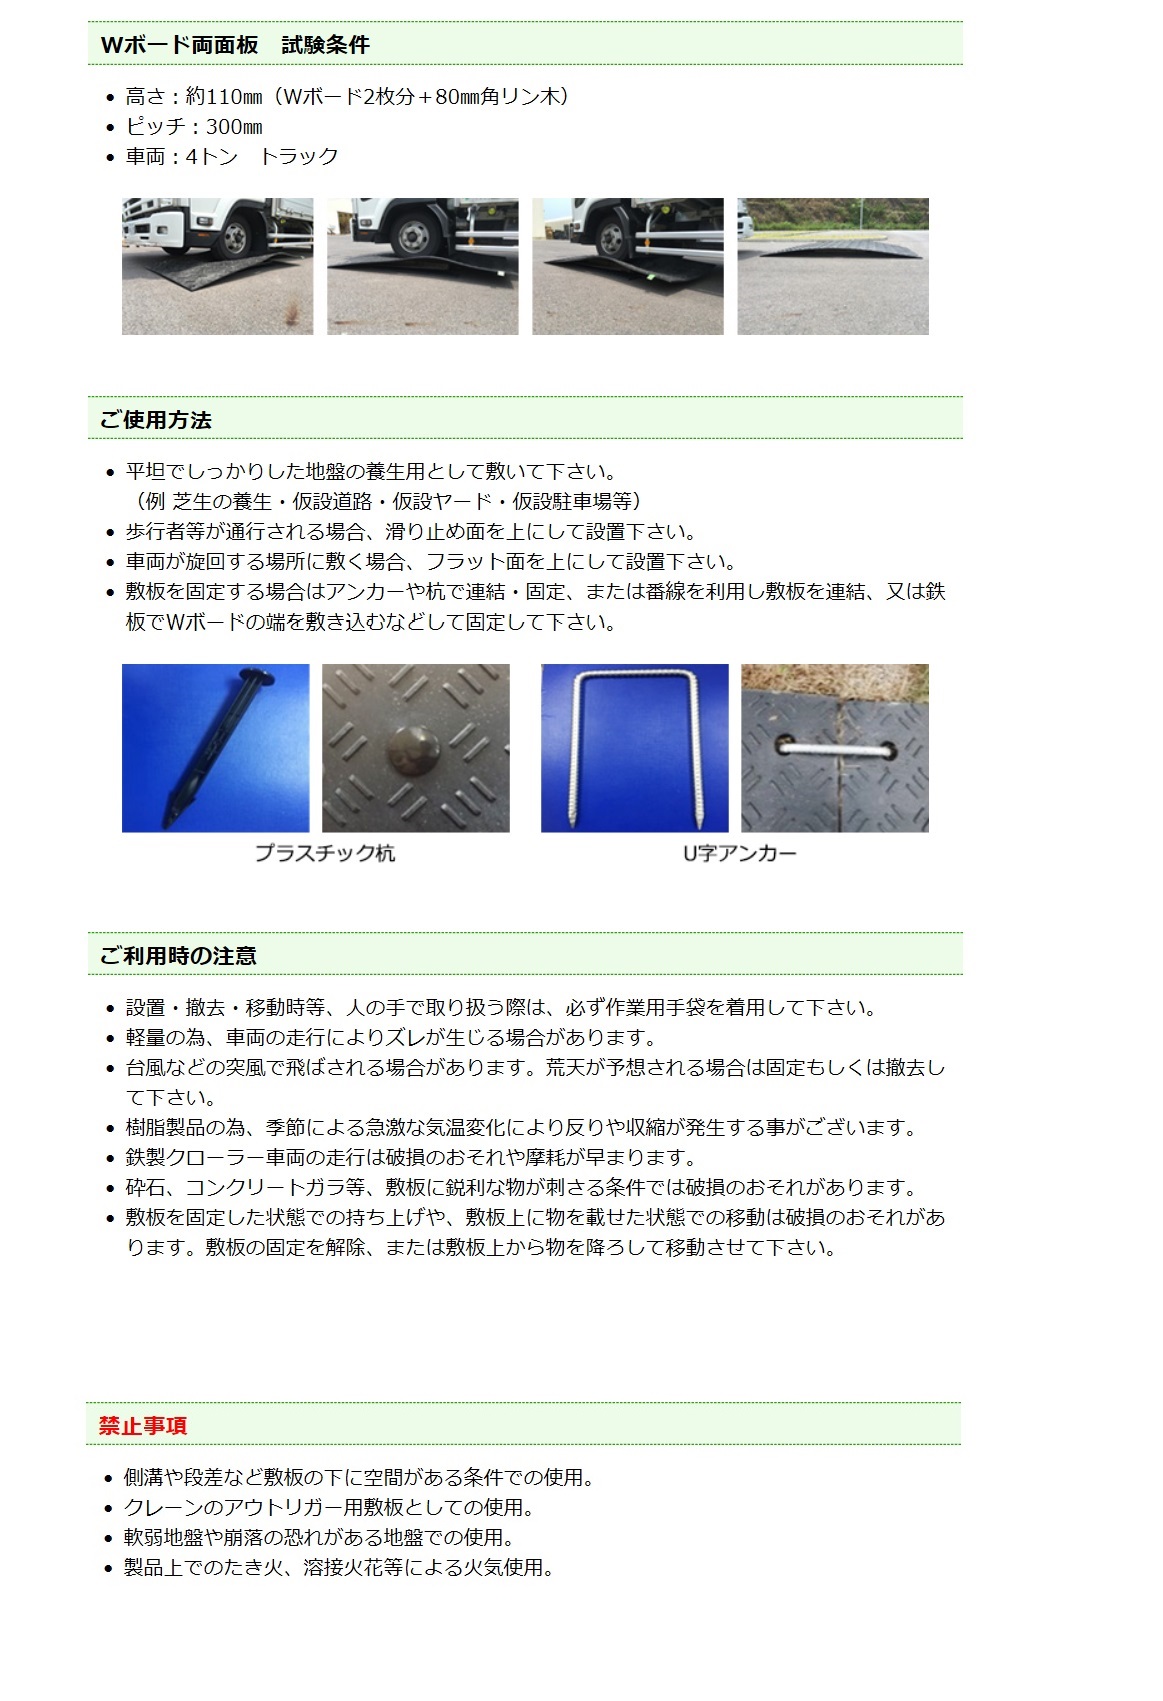 ウッドプラスチックテクノロジー 樹脂製養生敷板[Wボード] / 秋本勇吉 